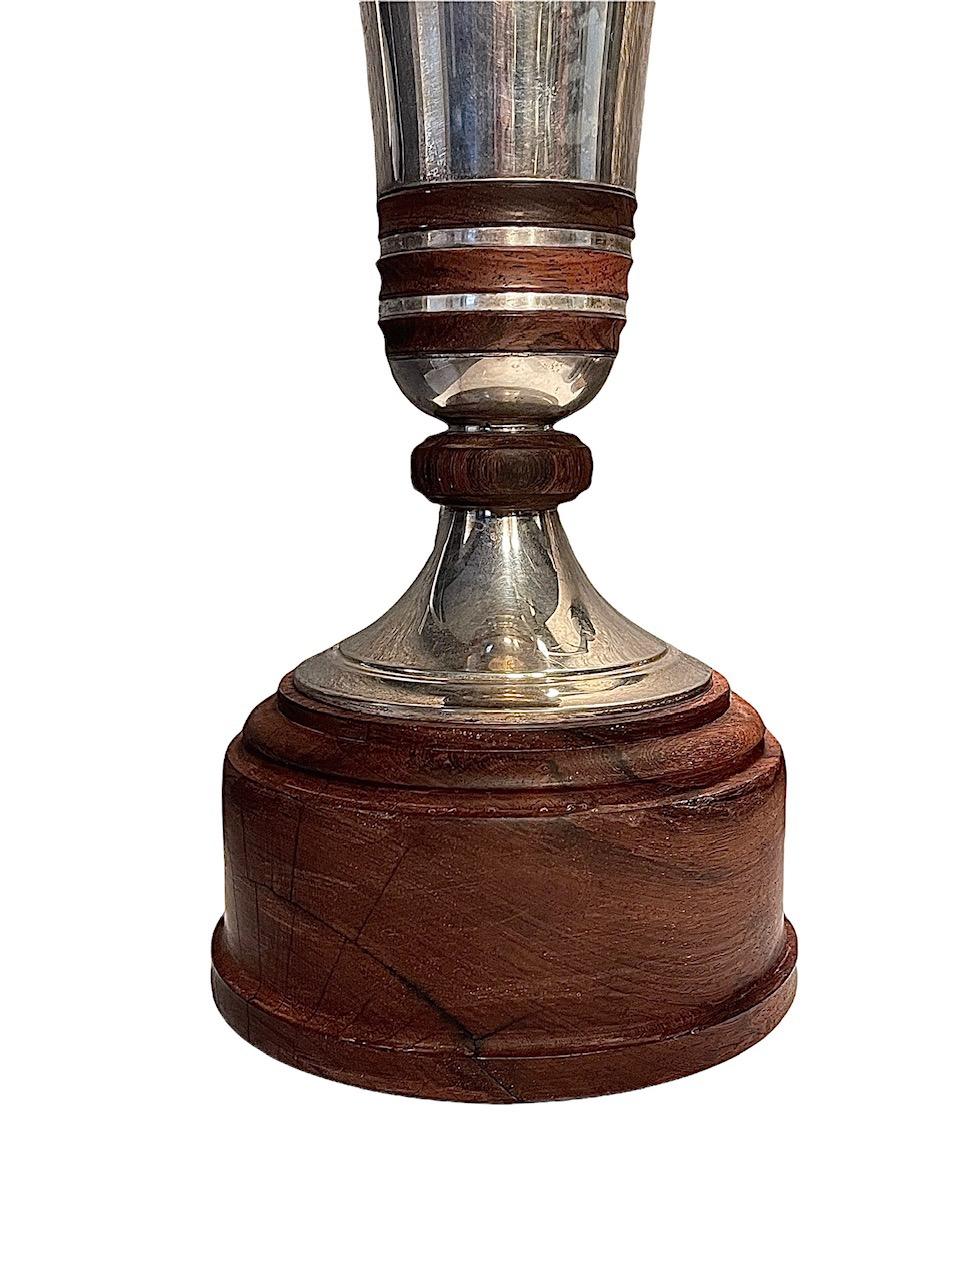 Un vase en argent belge sur pied en bois, par Brussels Wolfers, vers 1950. Forme de trompette avec anneaux en bois, le tout fixé sur une base en bois et marqué sur le bord.
 